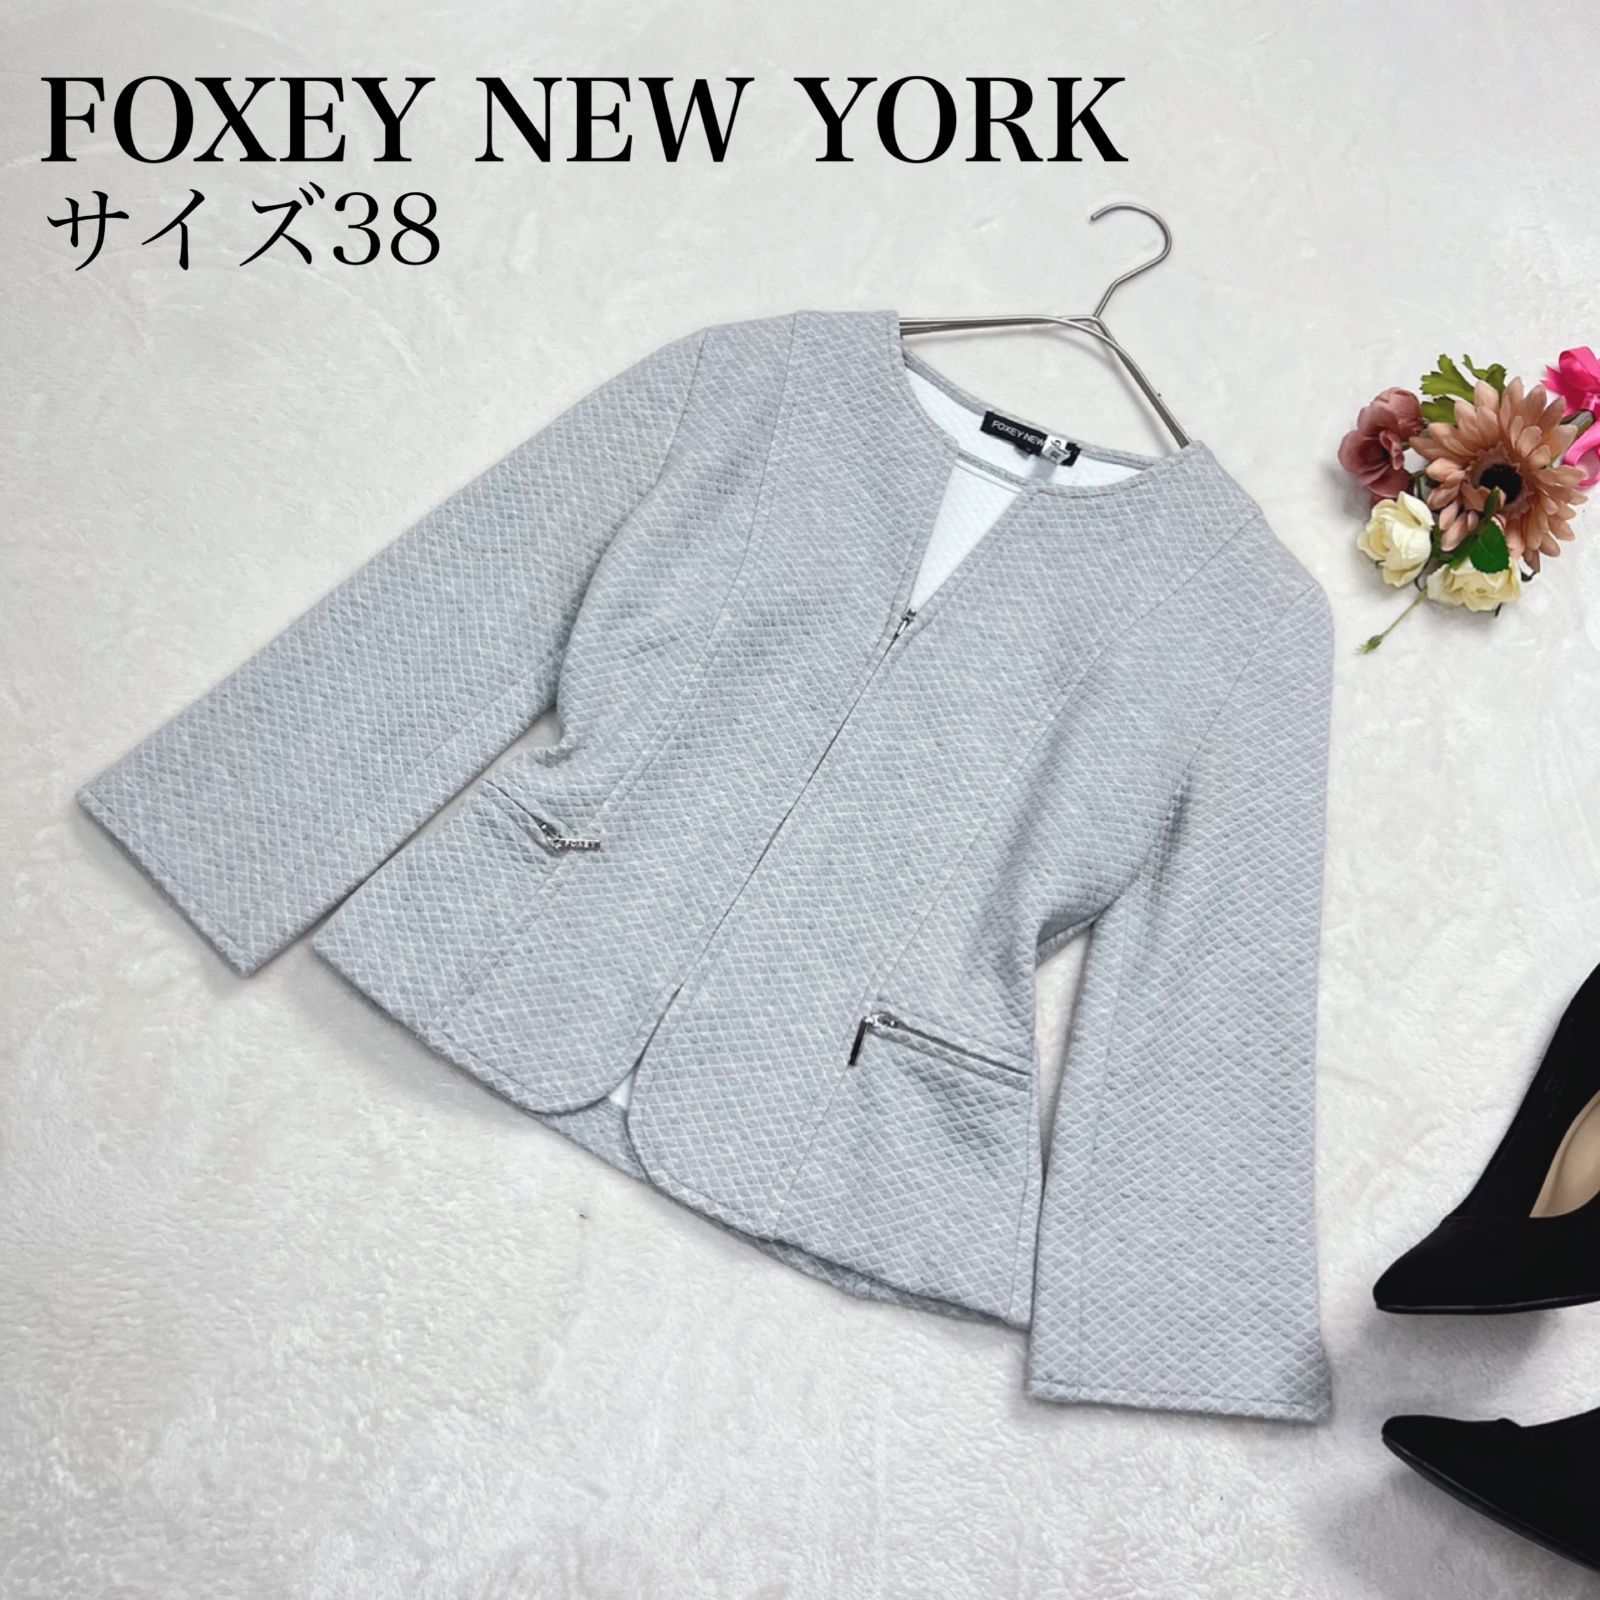 【美品 クリーニング済!】FOXEY New YORK(フォクシーニューヨーク)キルティング ノーカラージャケット サイズ38 Sサイズ相当 ライトグレー ターンナップスリーブ